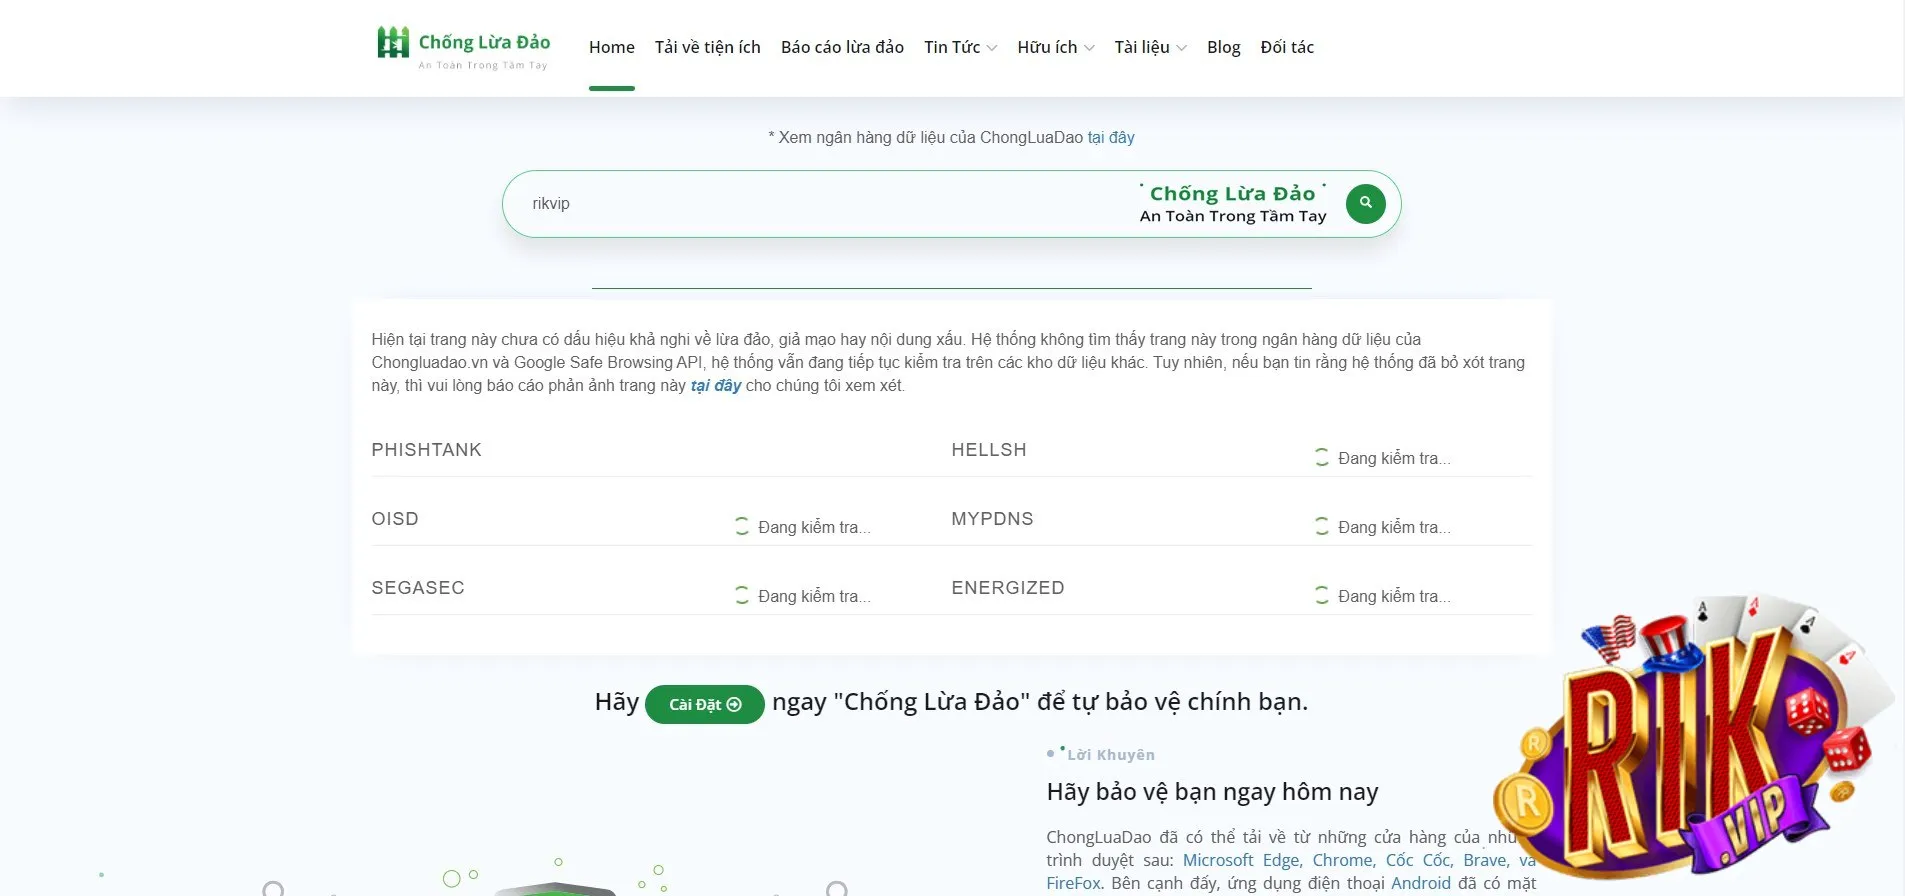 kiểm tra độ uy tín của RIKVIP trên Website Chống Lừa Đảo Ở Việt Nam